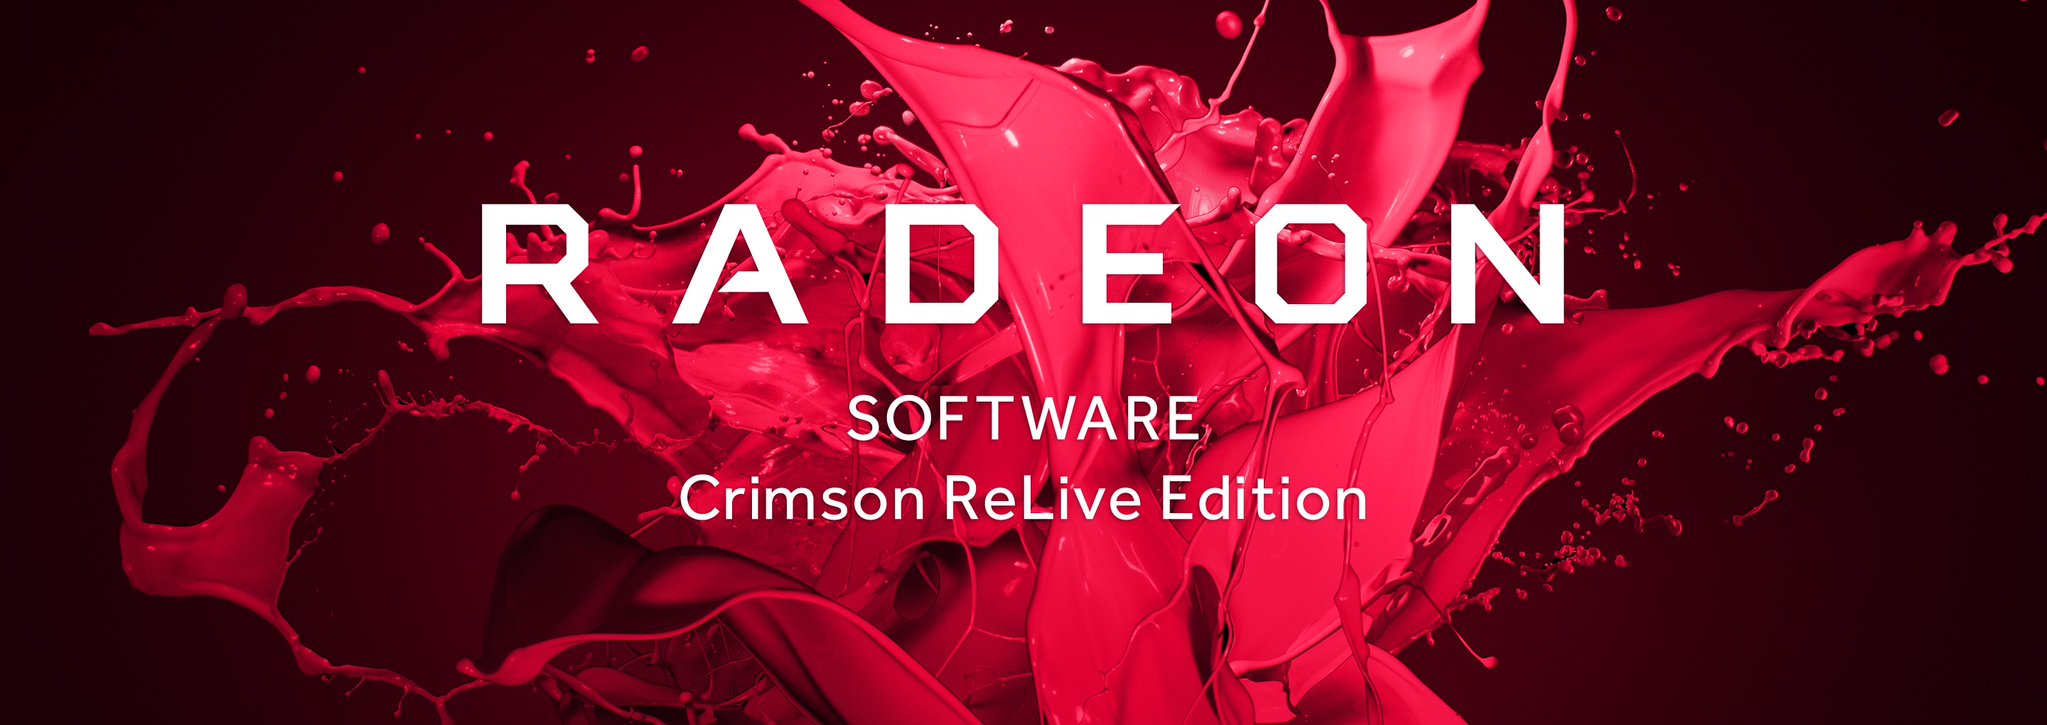 Immagine pubblicata in relazione al seguente contenuto: AMD rilascia il driver Radeon Software Crimson ReLive Edition 17.6.1 per DiRT 4 | Nome immagine: news26493_Radeon-Software-Crimson-ReLive-Edition_1.jpg